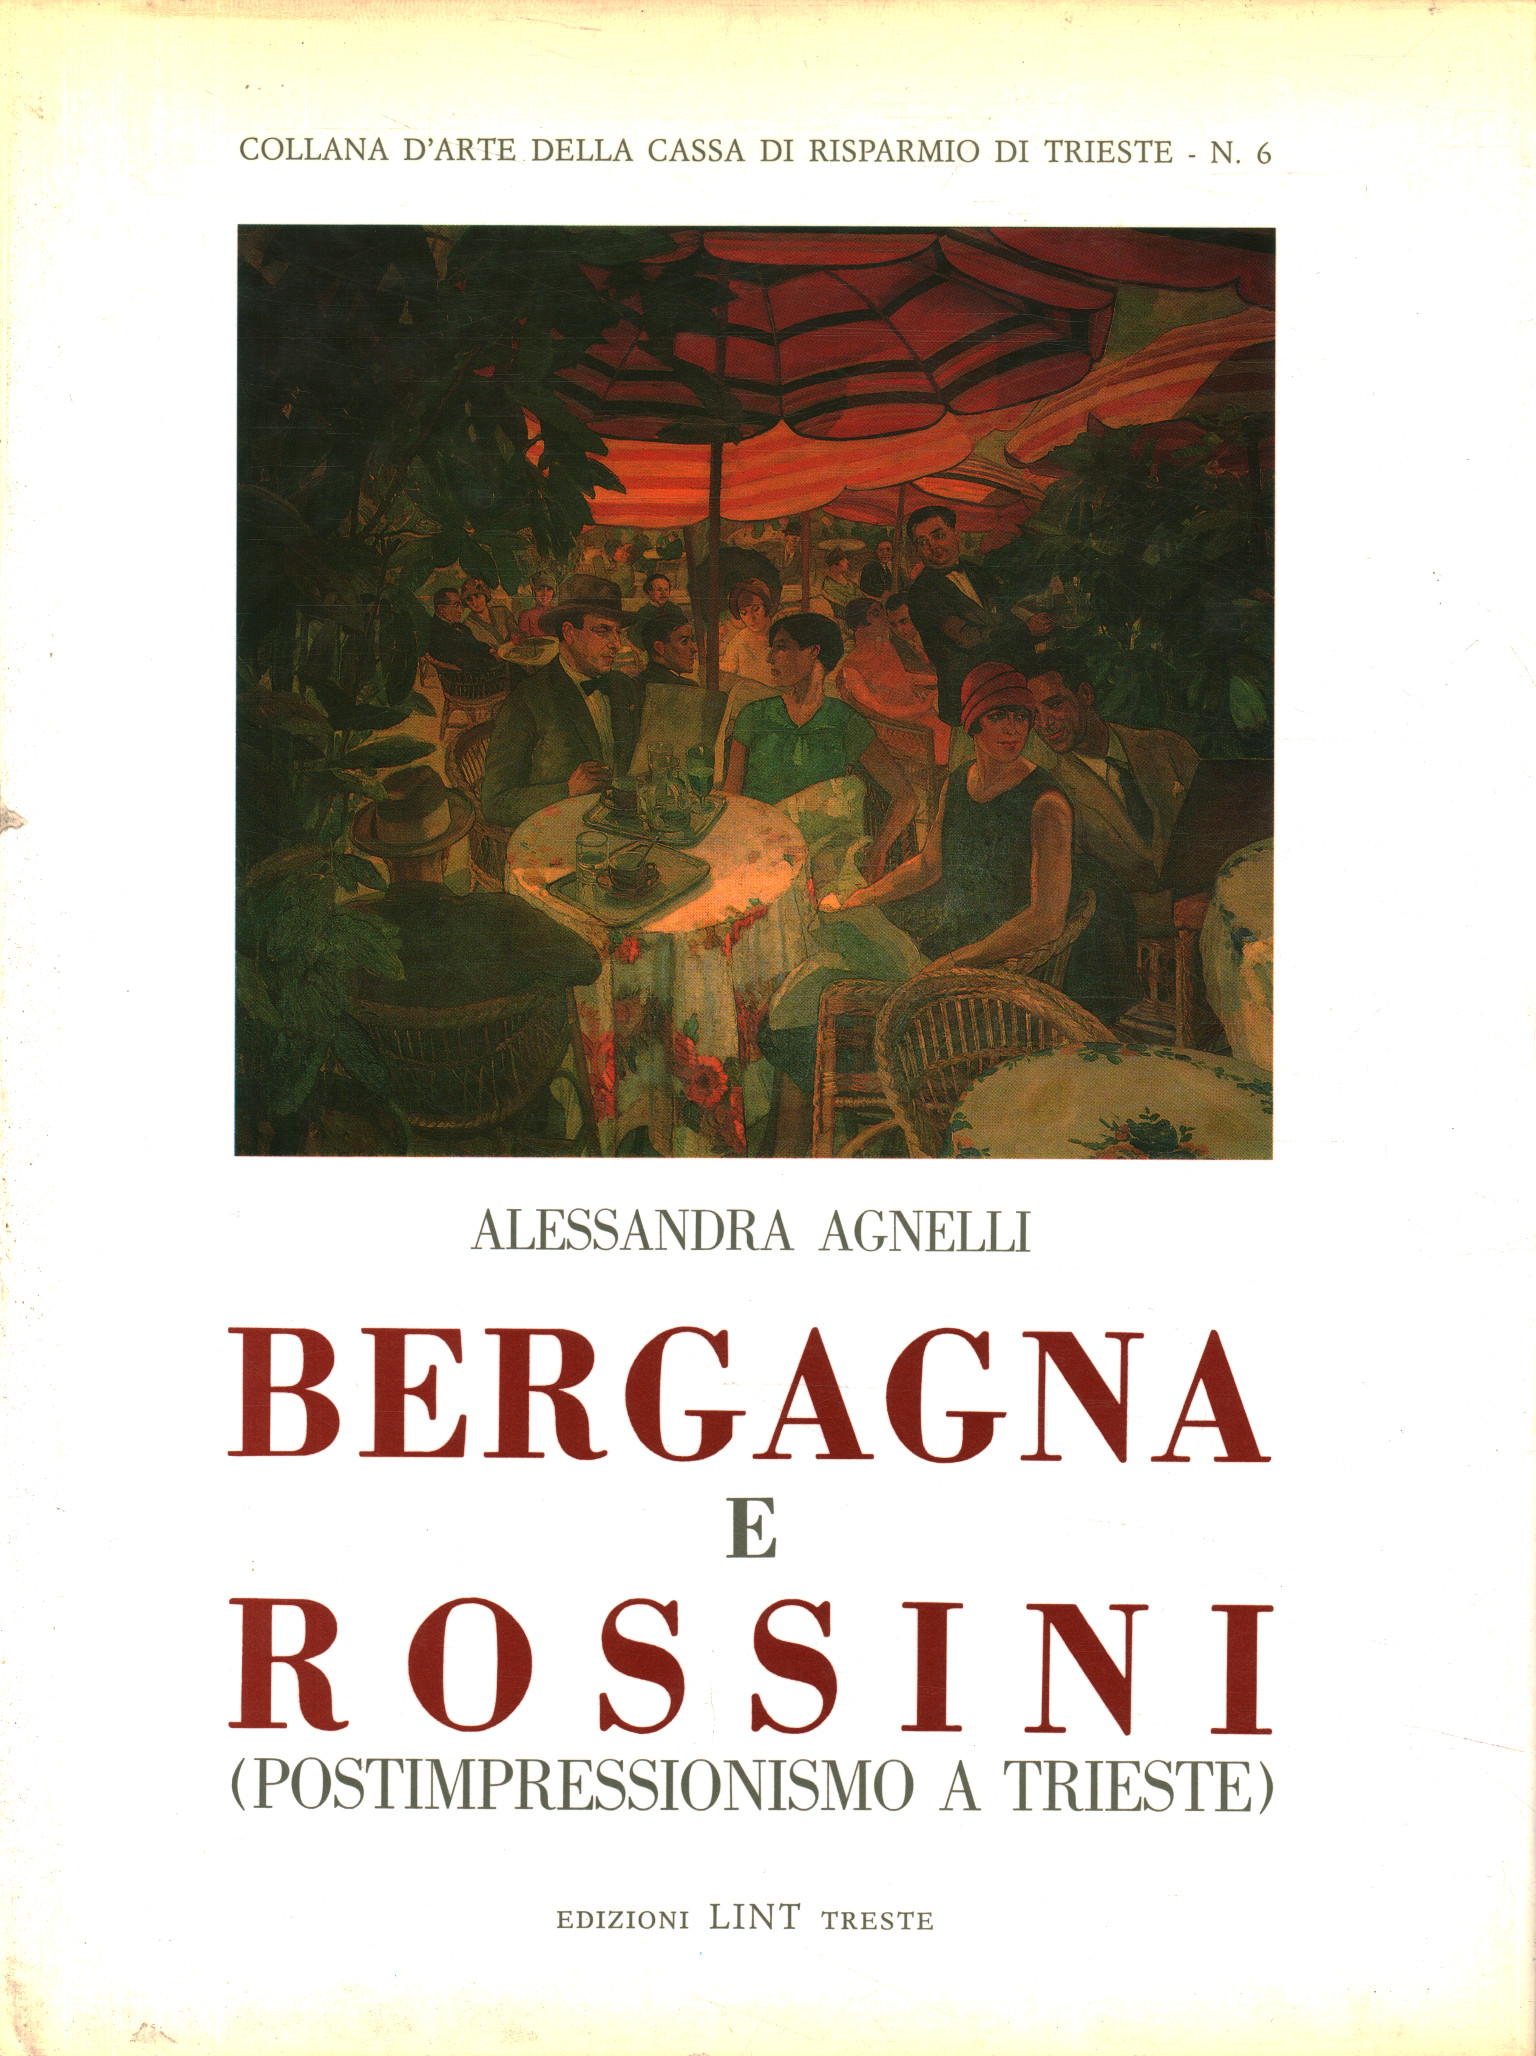 Bergagna und Rossini